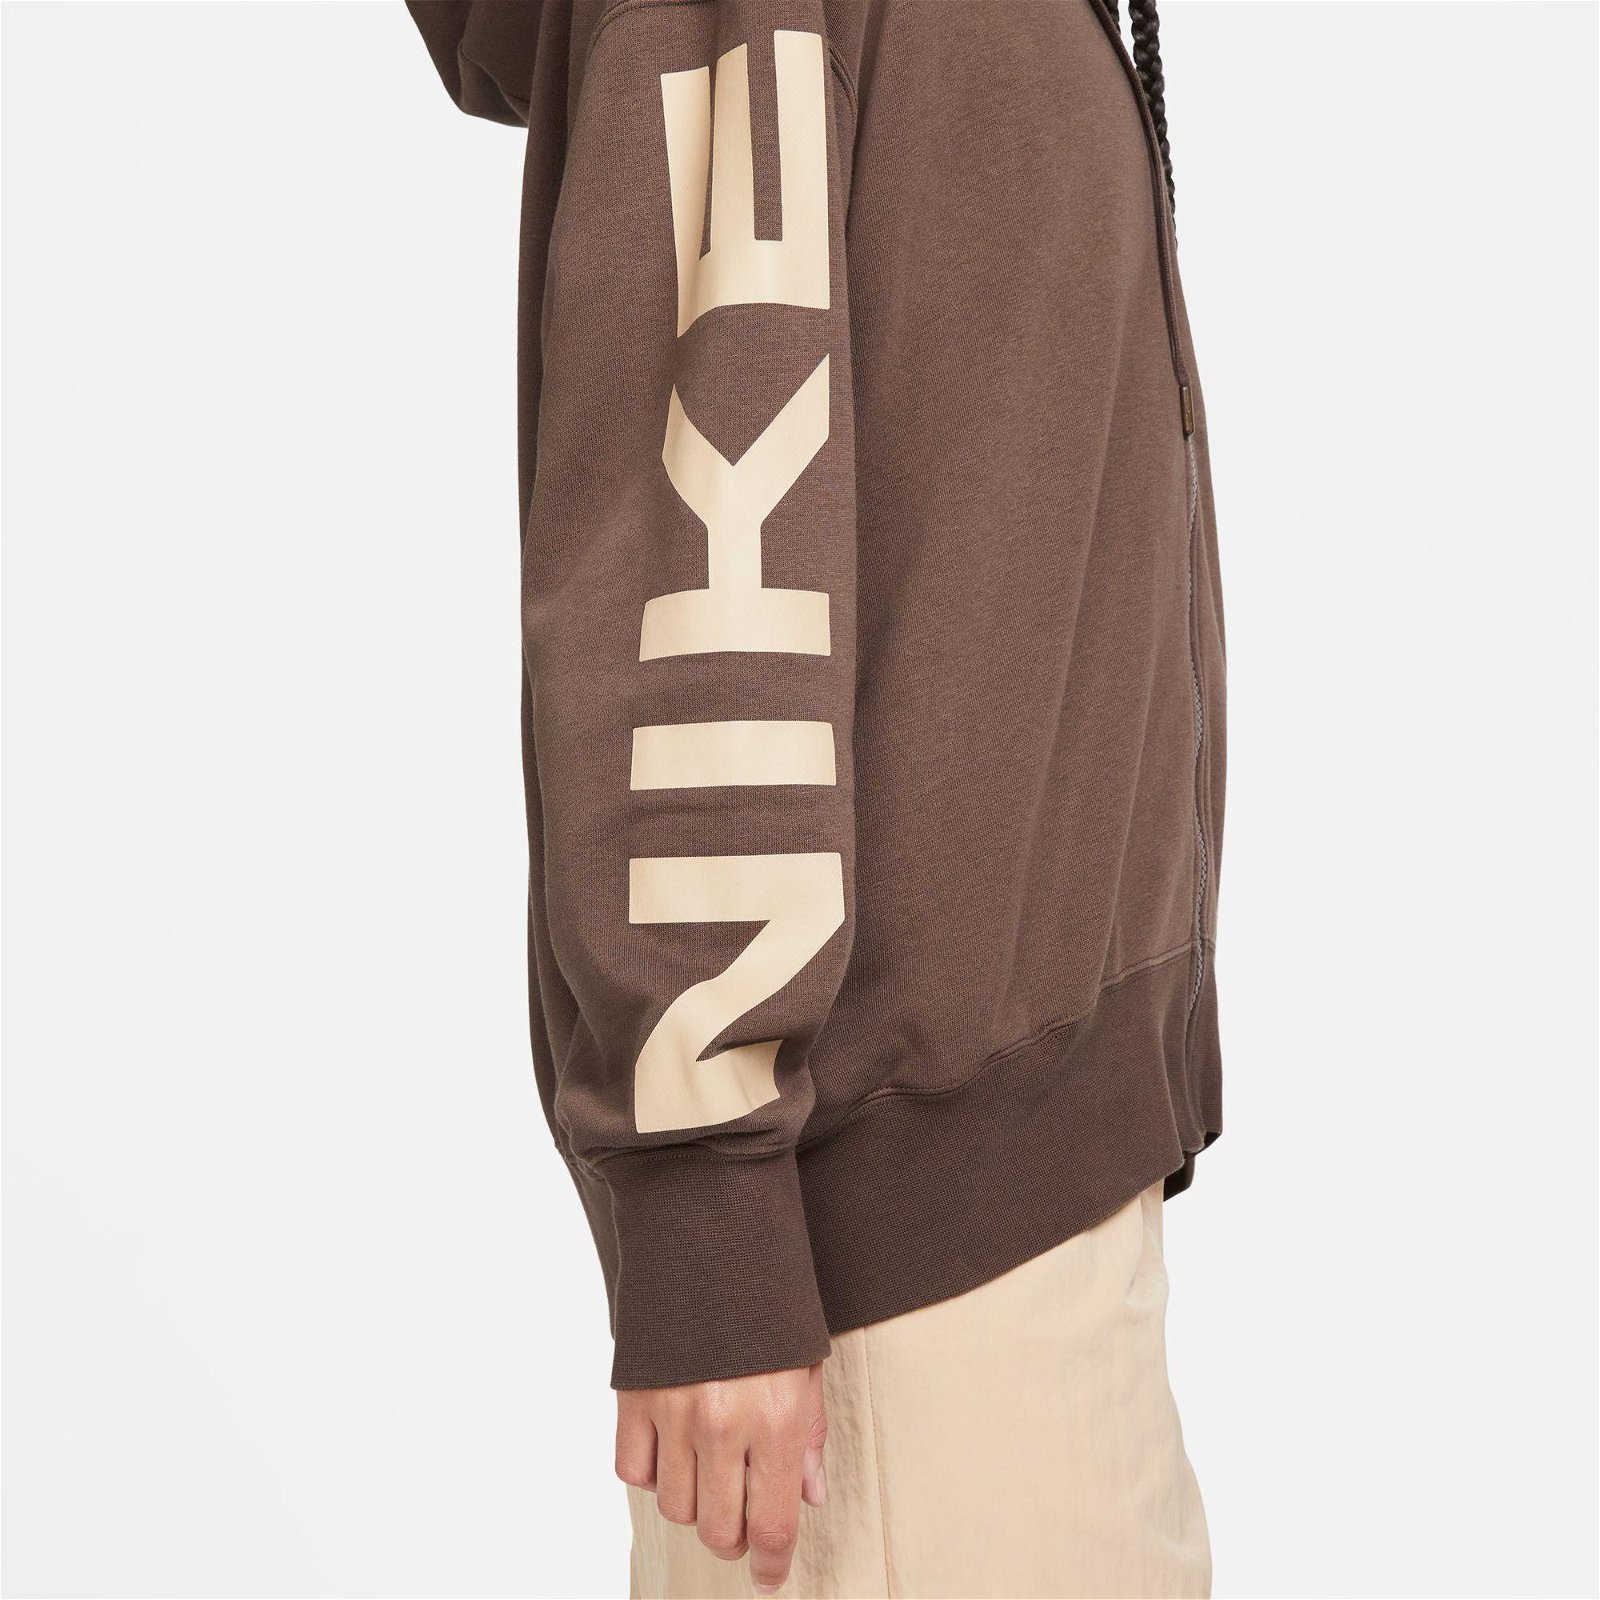 Nike Sportswear Air Fleece Oversize Full Zip Hooded Kadın Kahverengi Sweatshirt